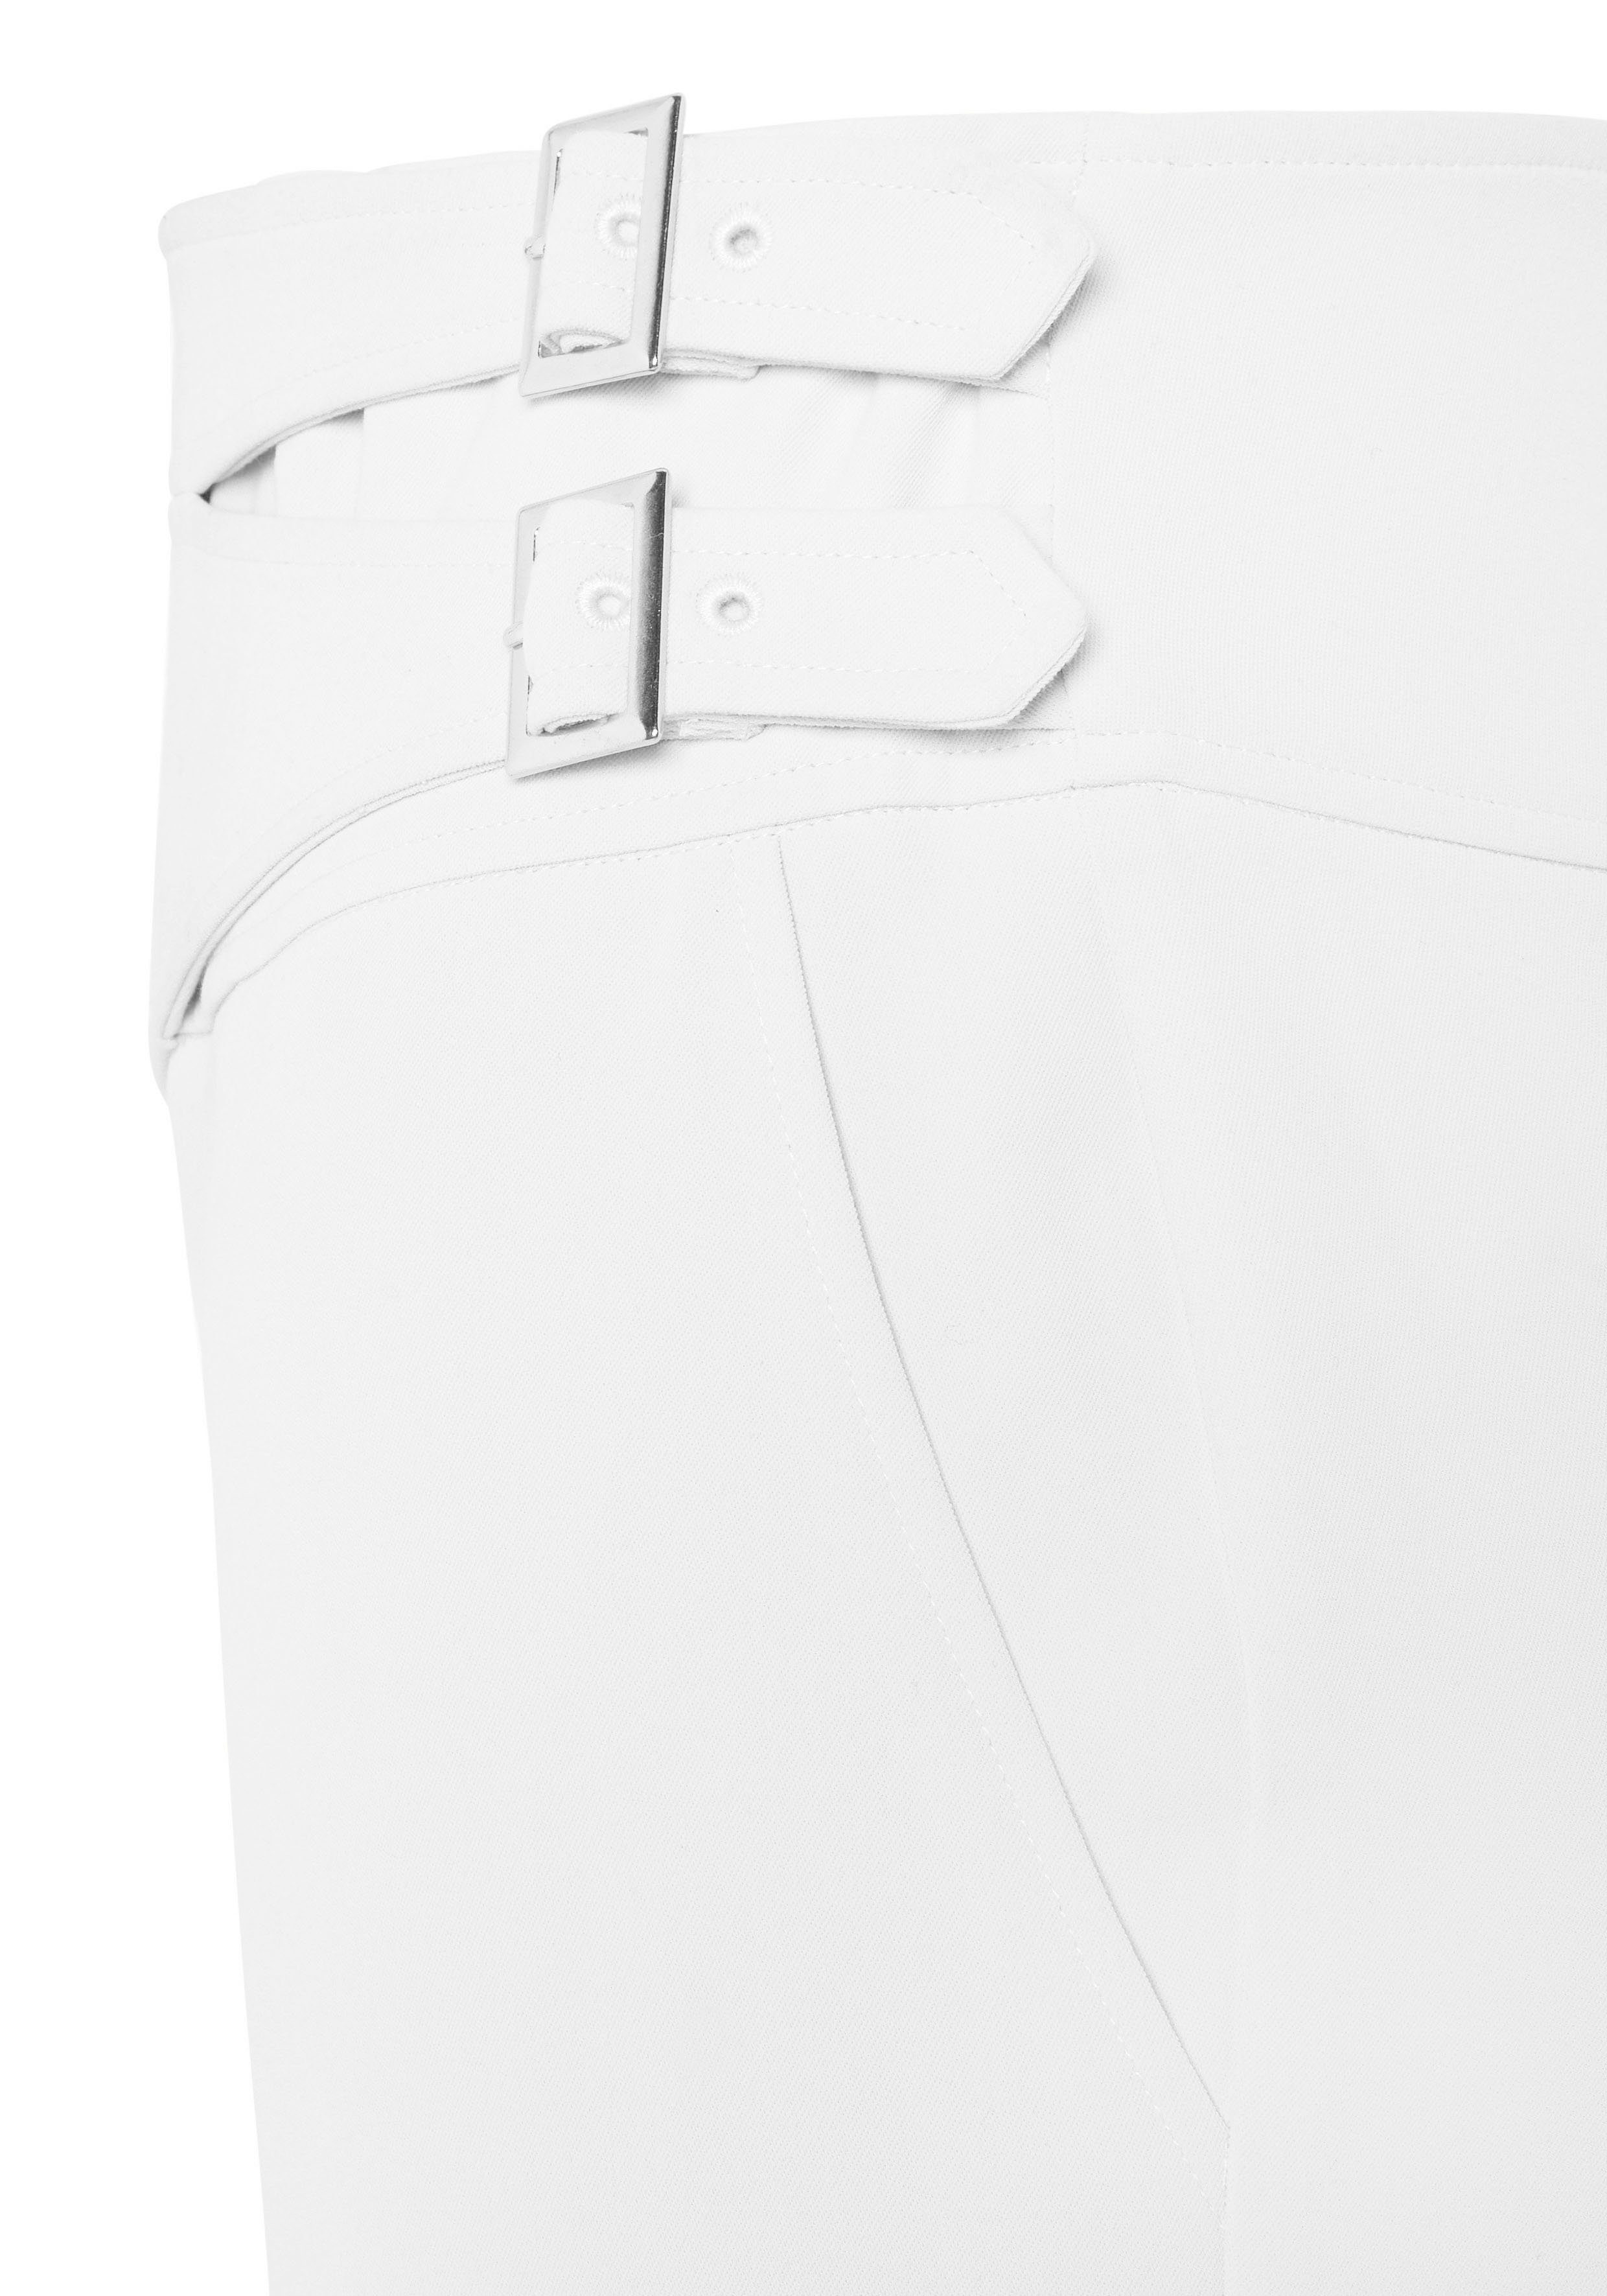 Lascana 7 8-broek met siergespen in de tailleband